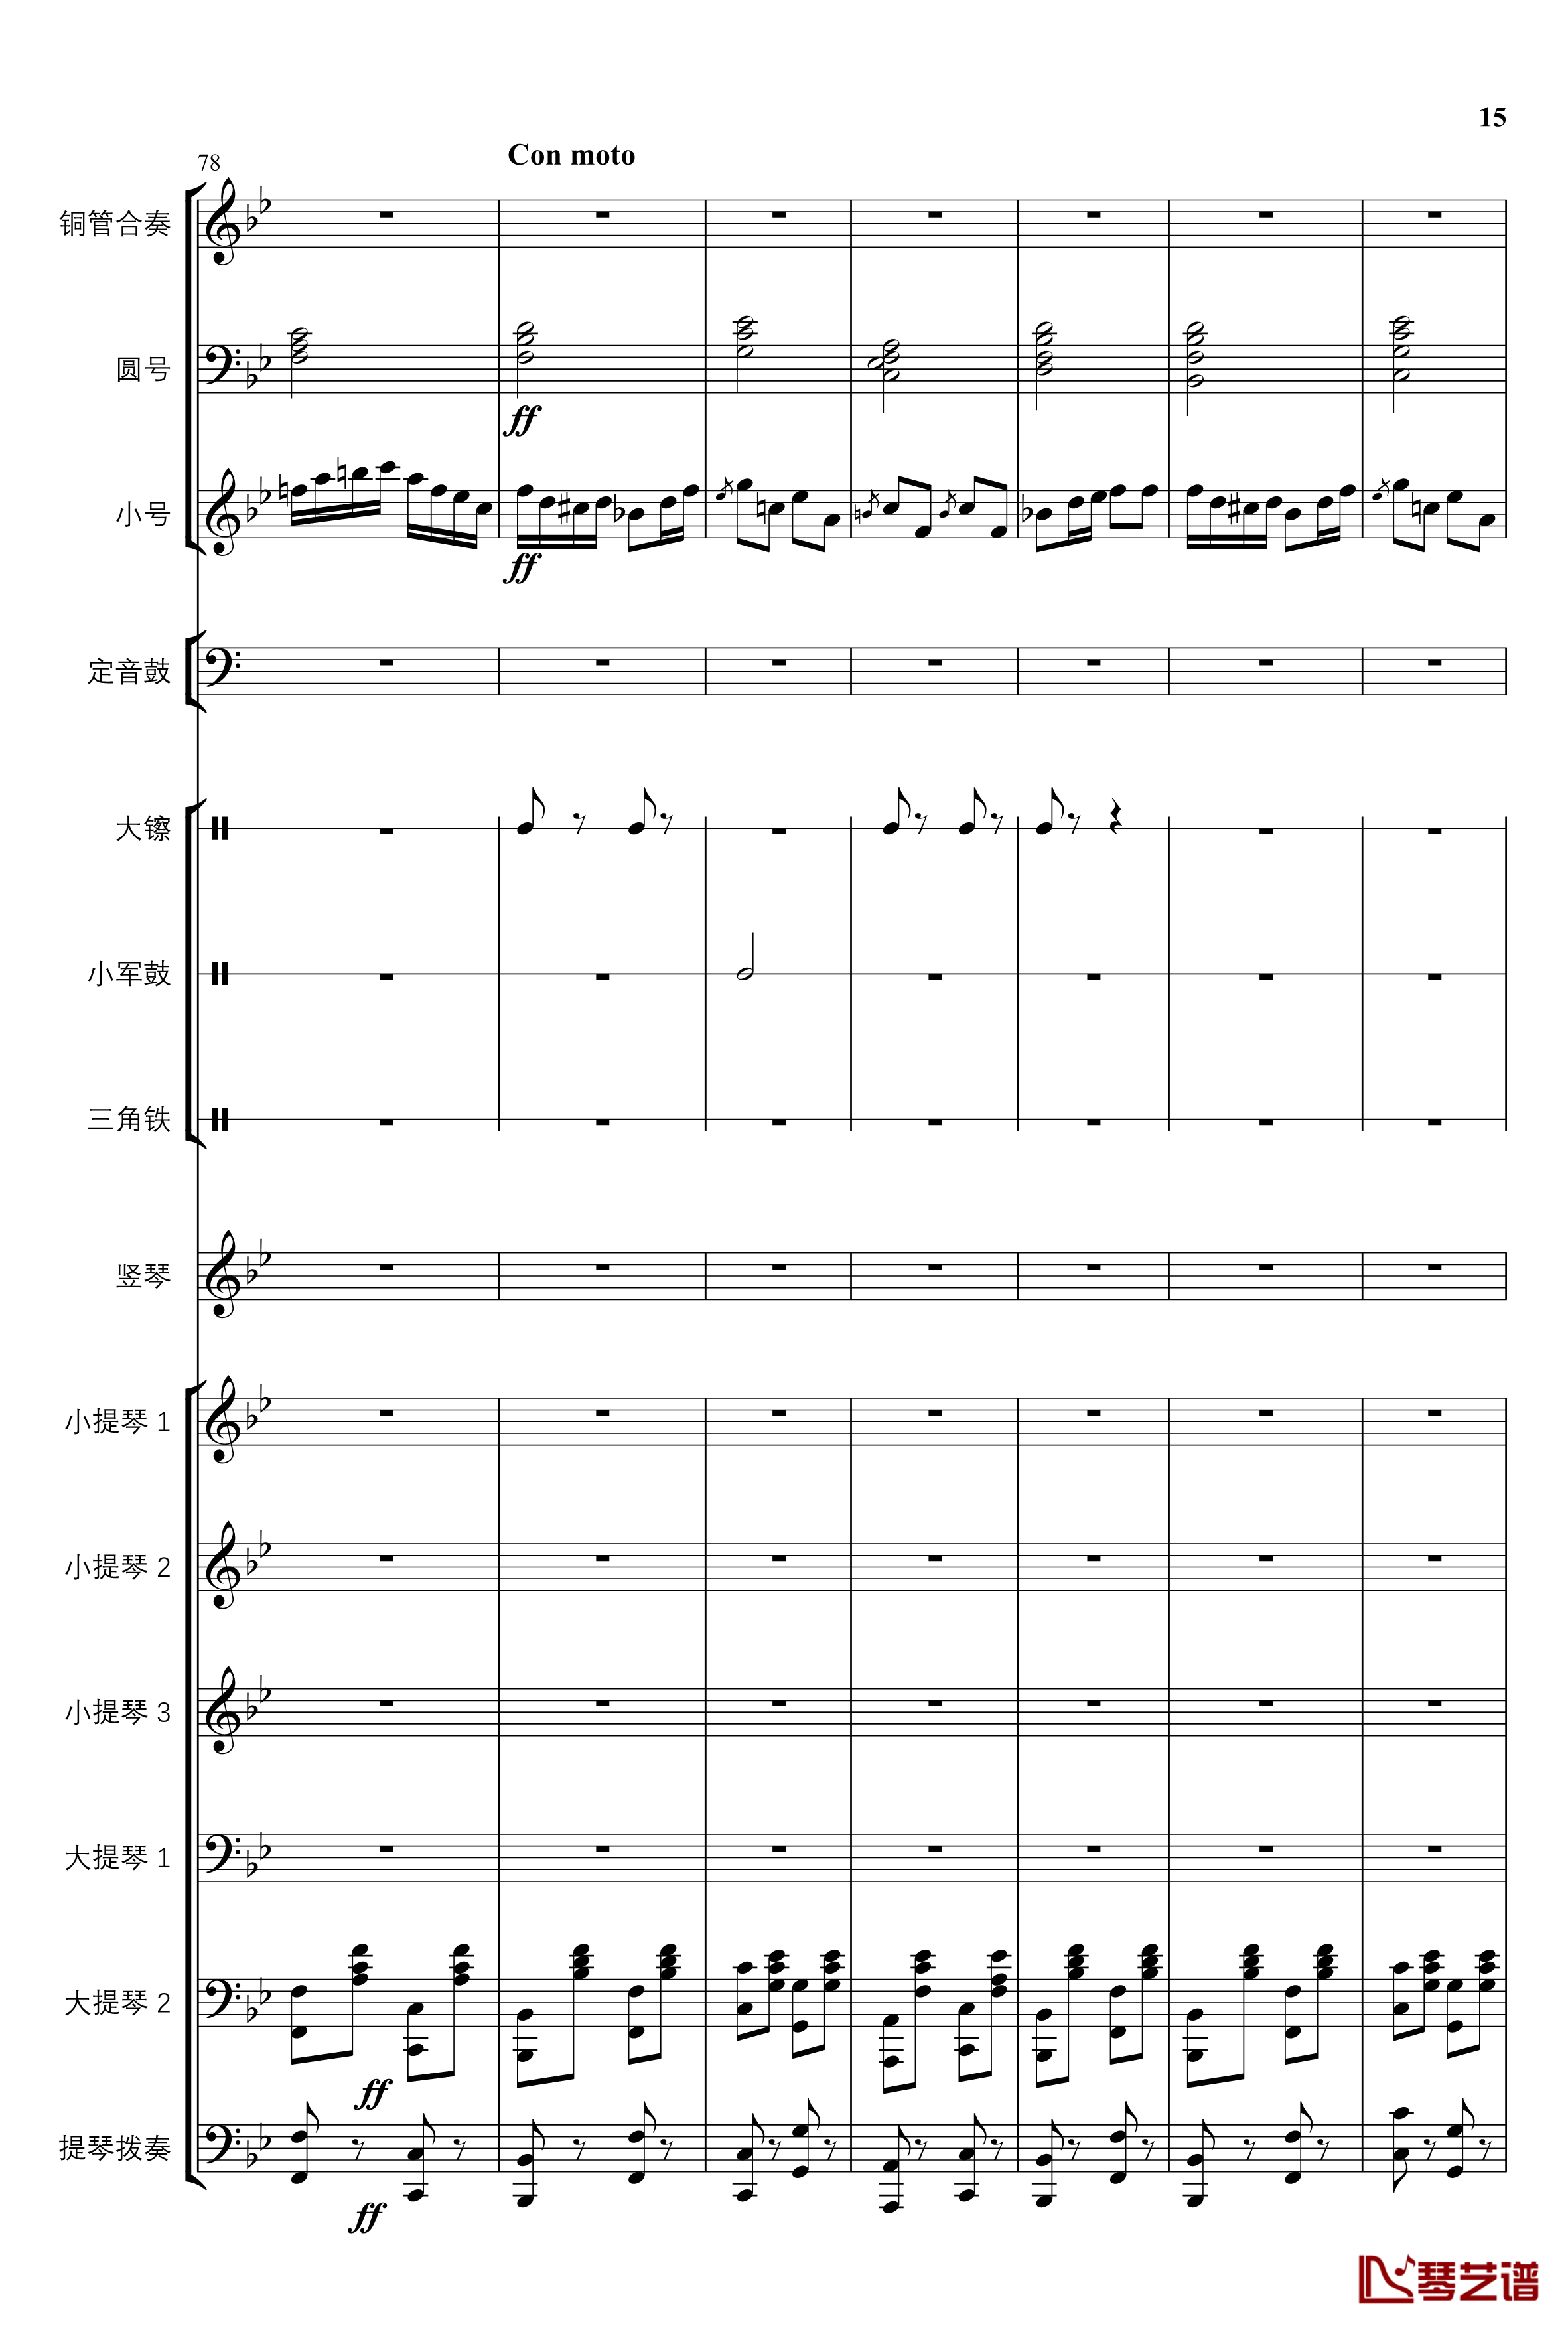 2013考试周的叙事曲钢琴谱-管弦乐重编曲版-江畔新绿15